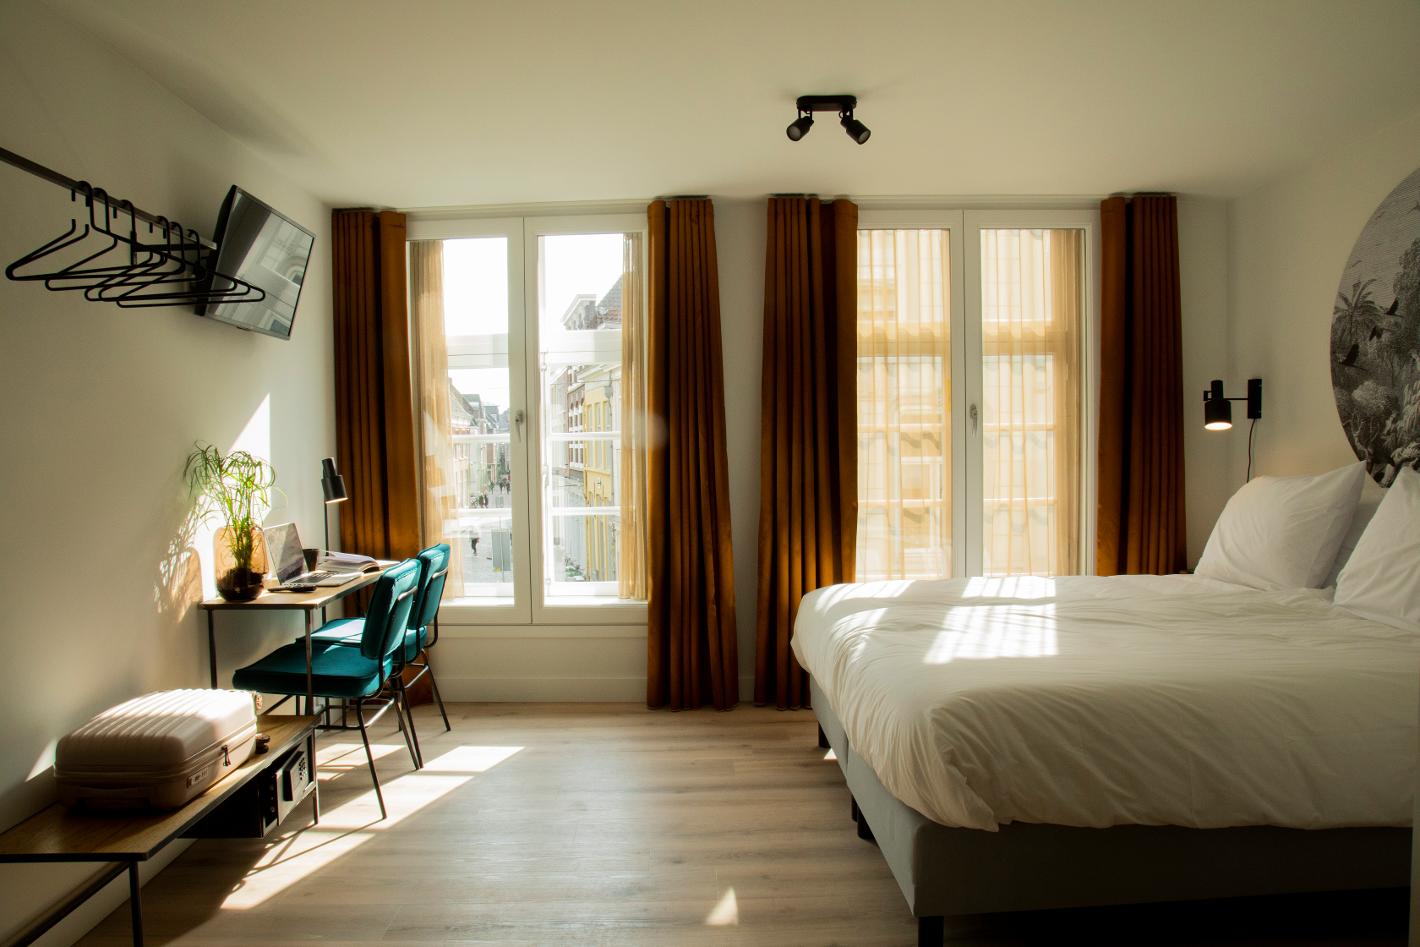 Photo Hotel Haverkist en Den Bosch, Dormir, Passer la nuit - #2